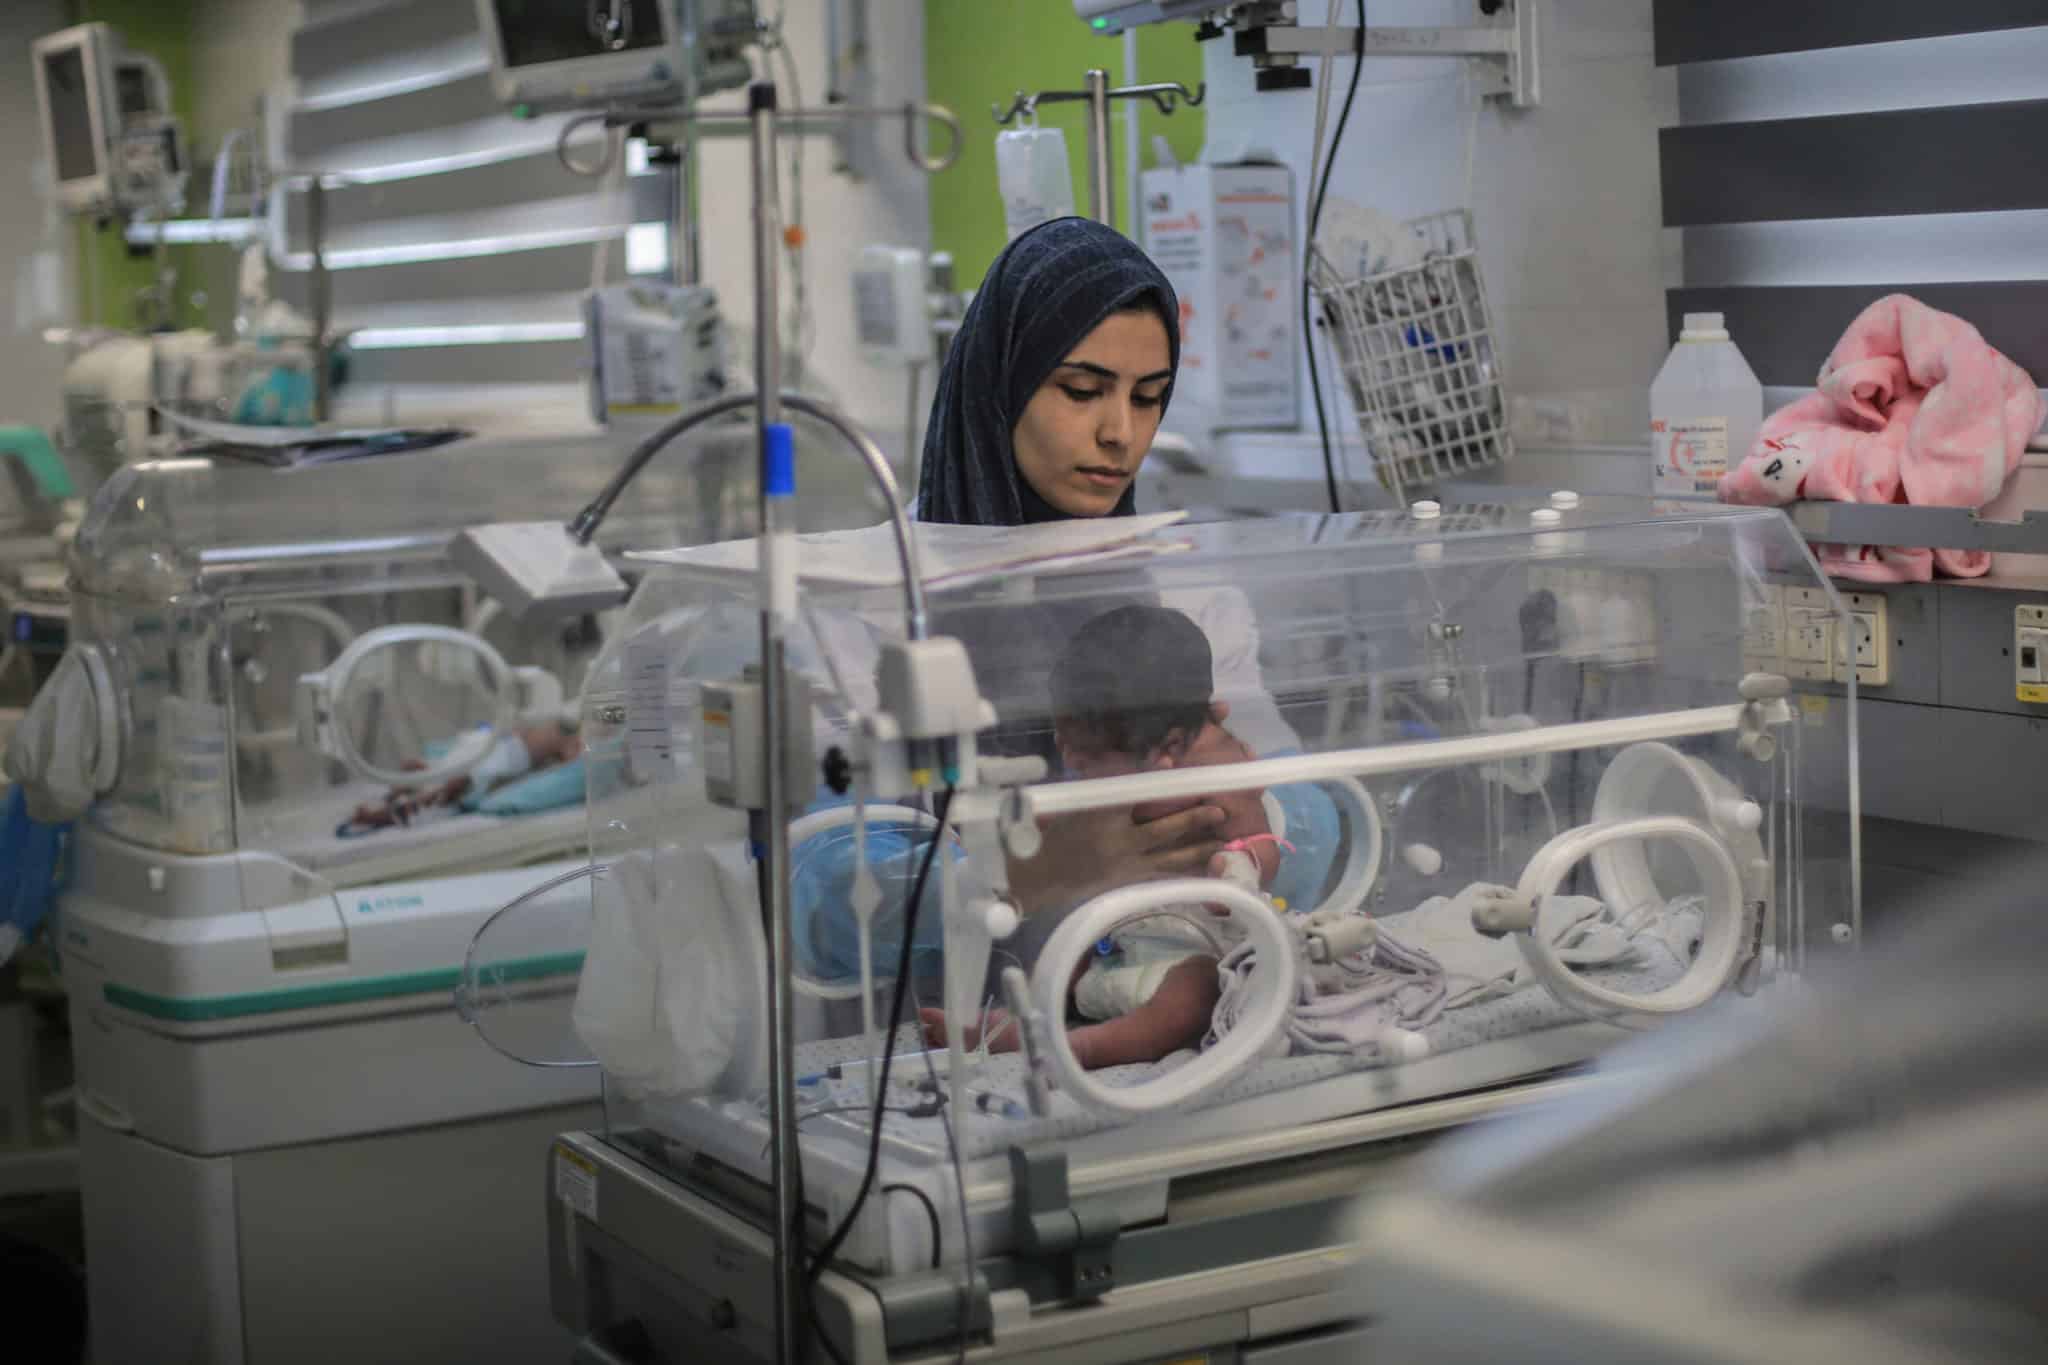 Des nouveau-nés à Gaza meurent de causes évitables en raison du siège israélien, selon Oxfam